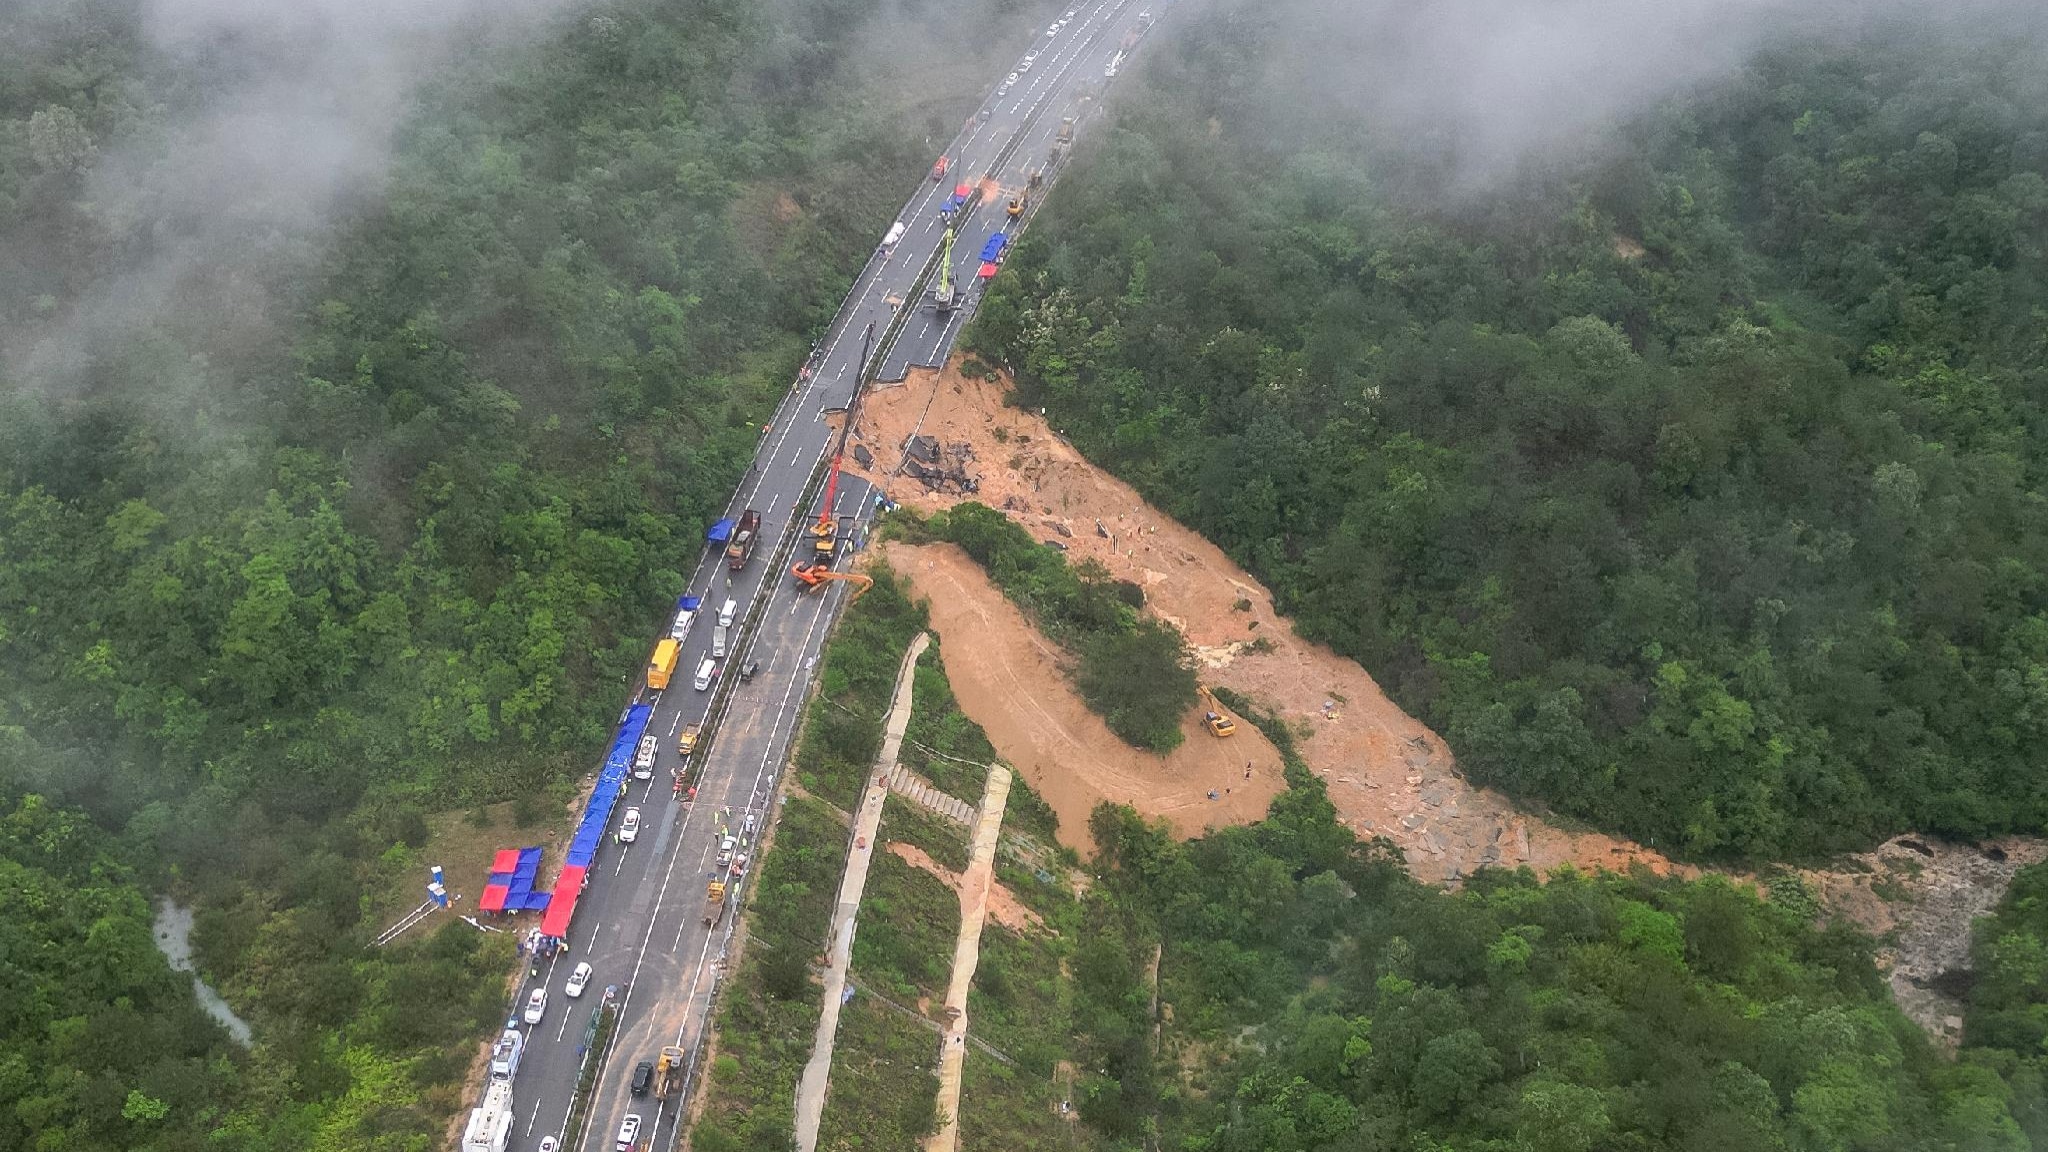 crolla un'autostrada nel sud della cina, morte almeno 36 persone